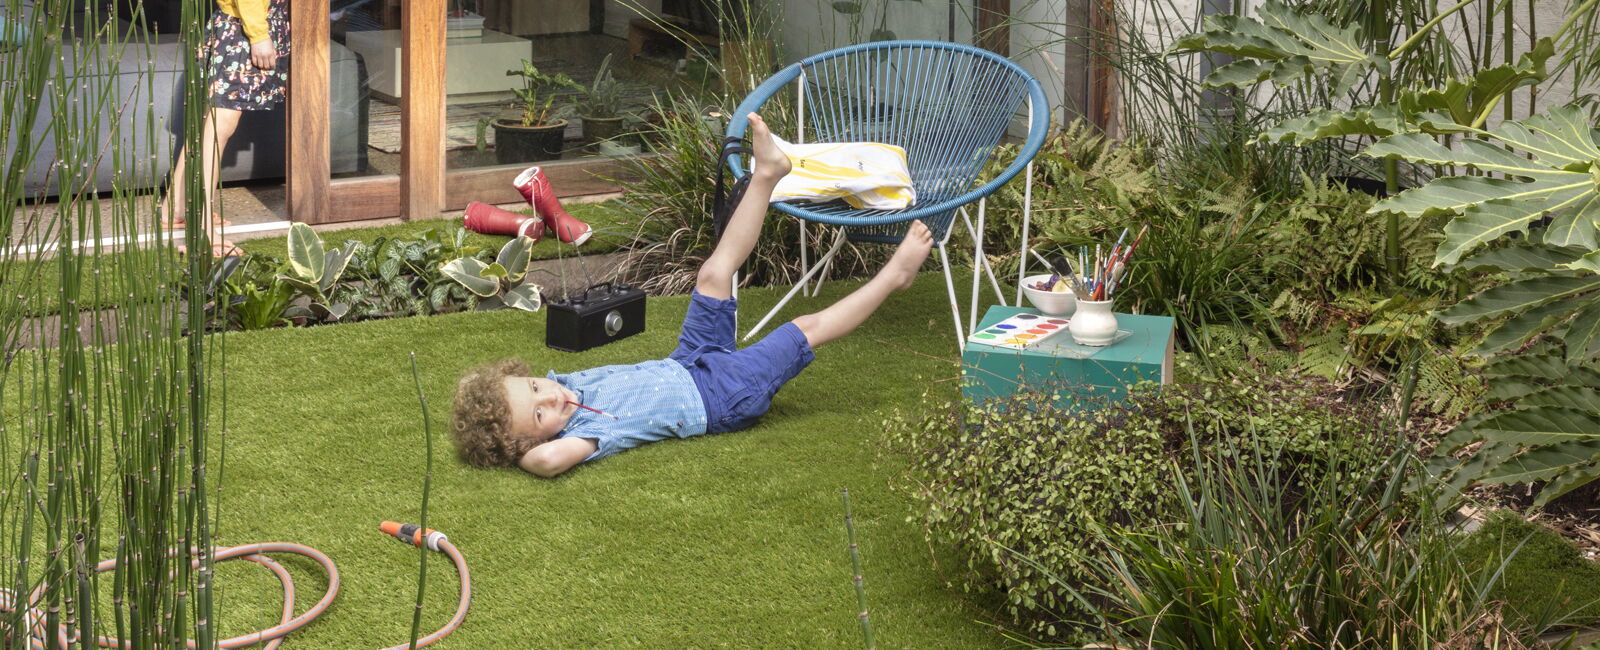 Kids on grass in garden